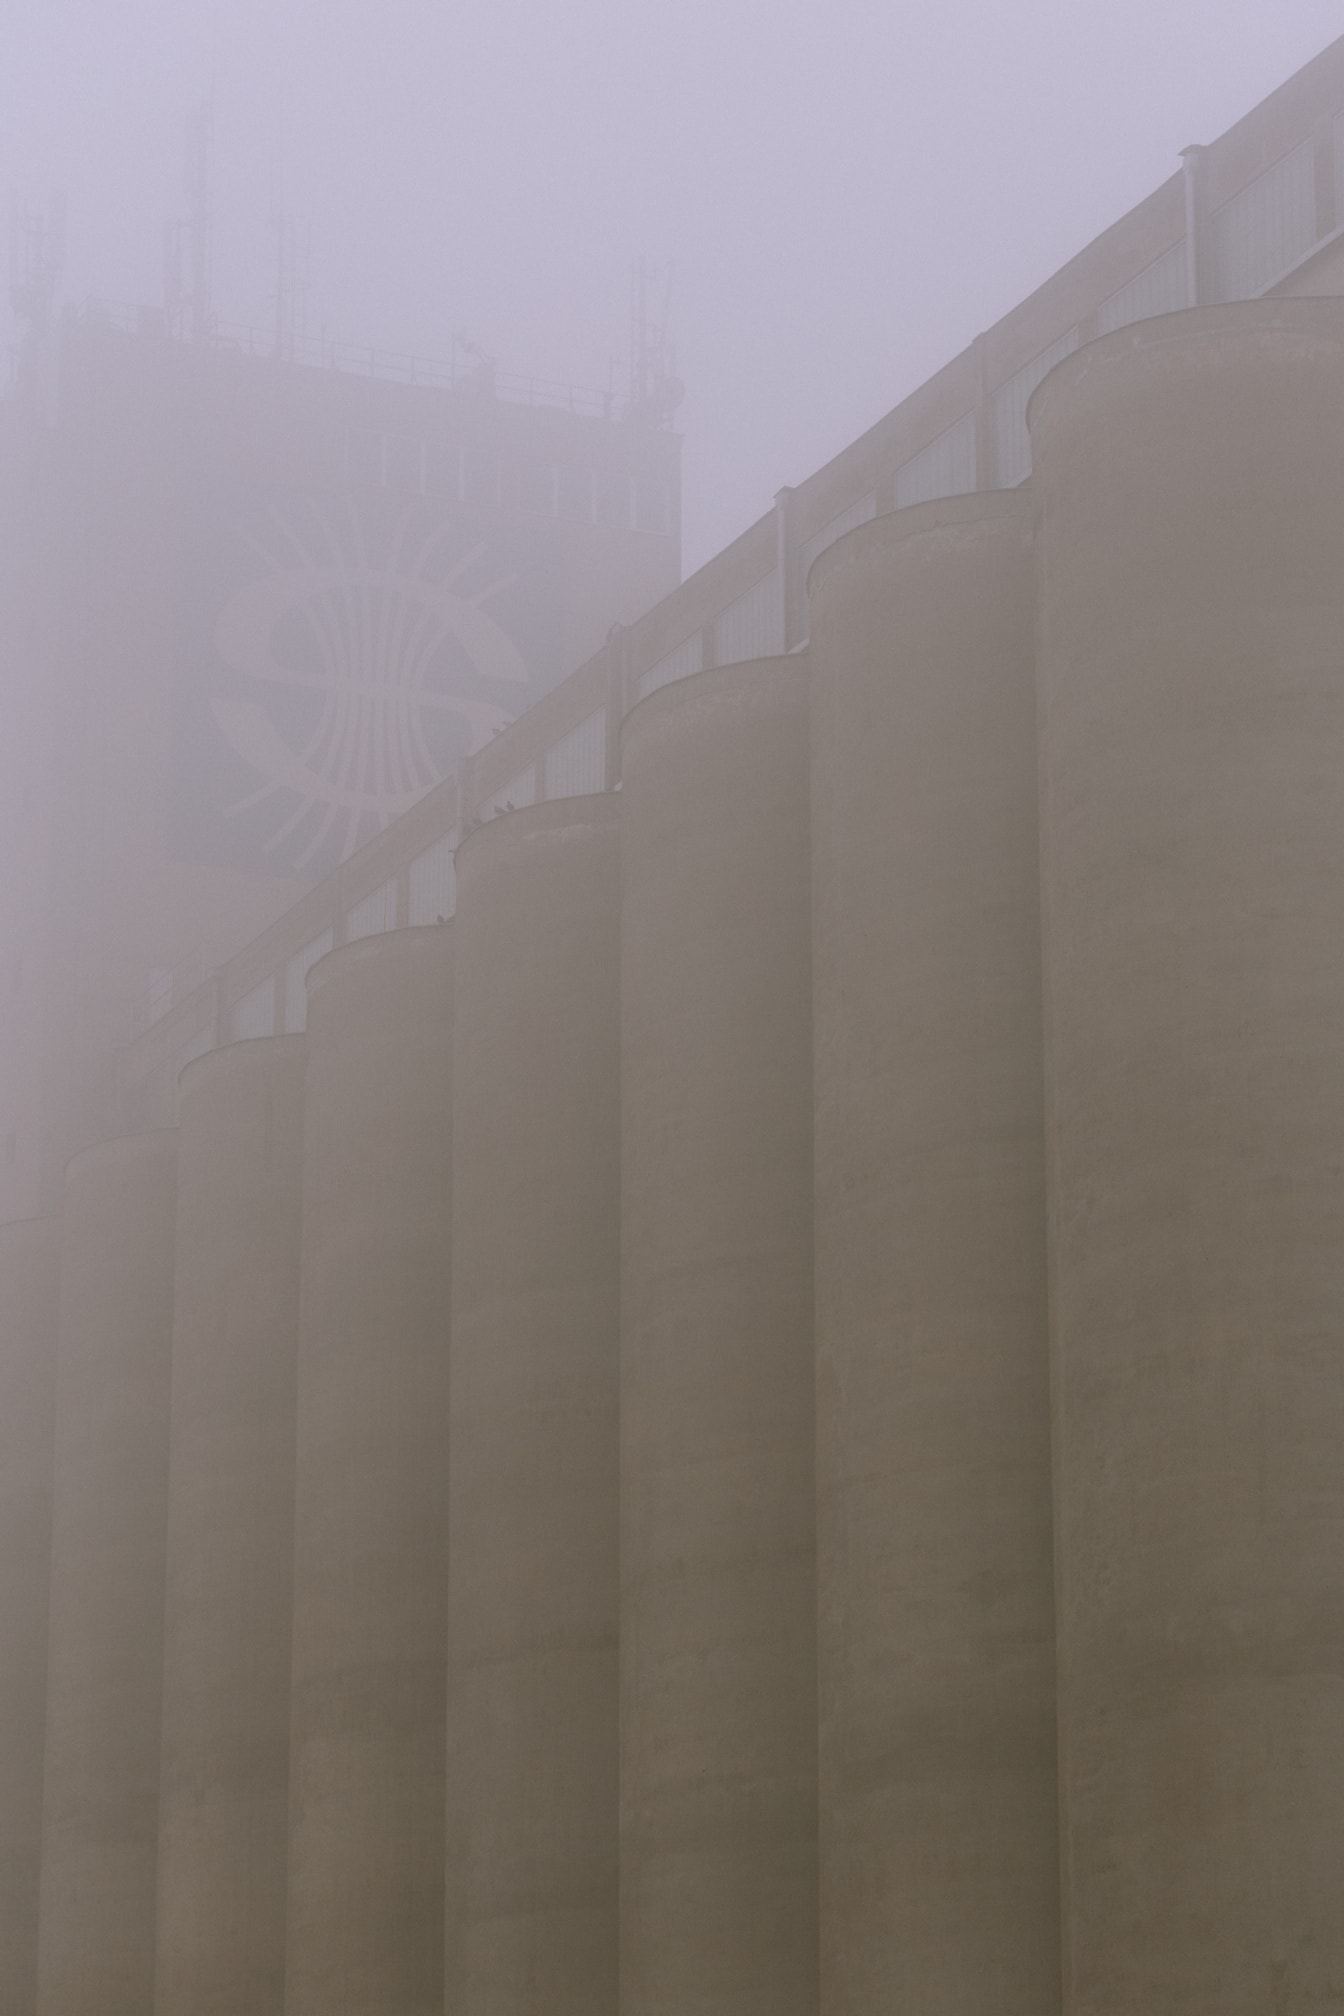 Hög betongsilobyggnad i socialistisk arkitektonisk stil i tät dimma